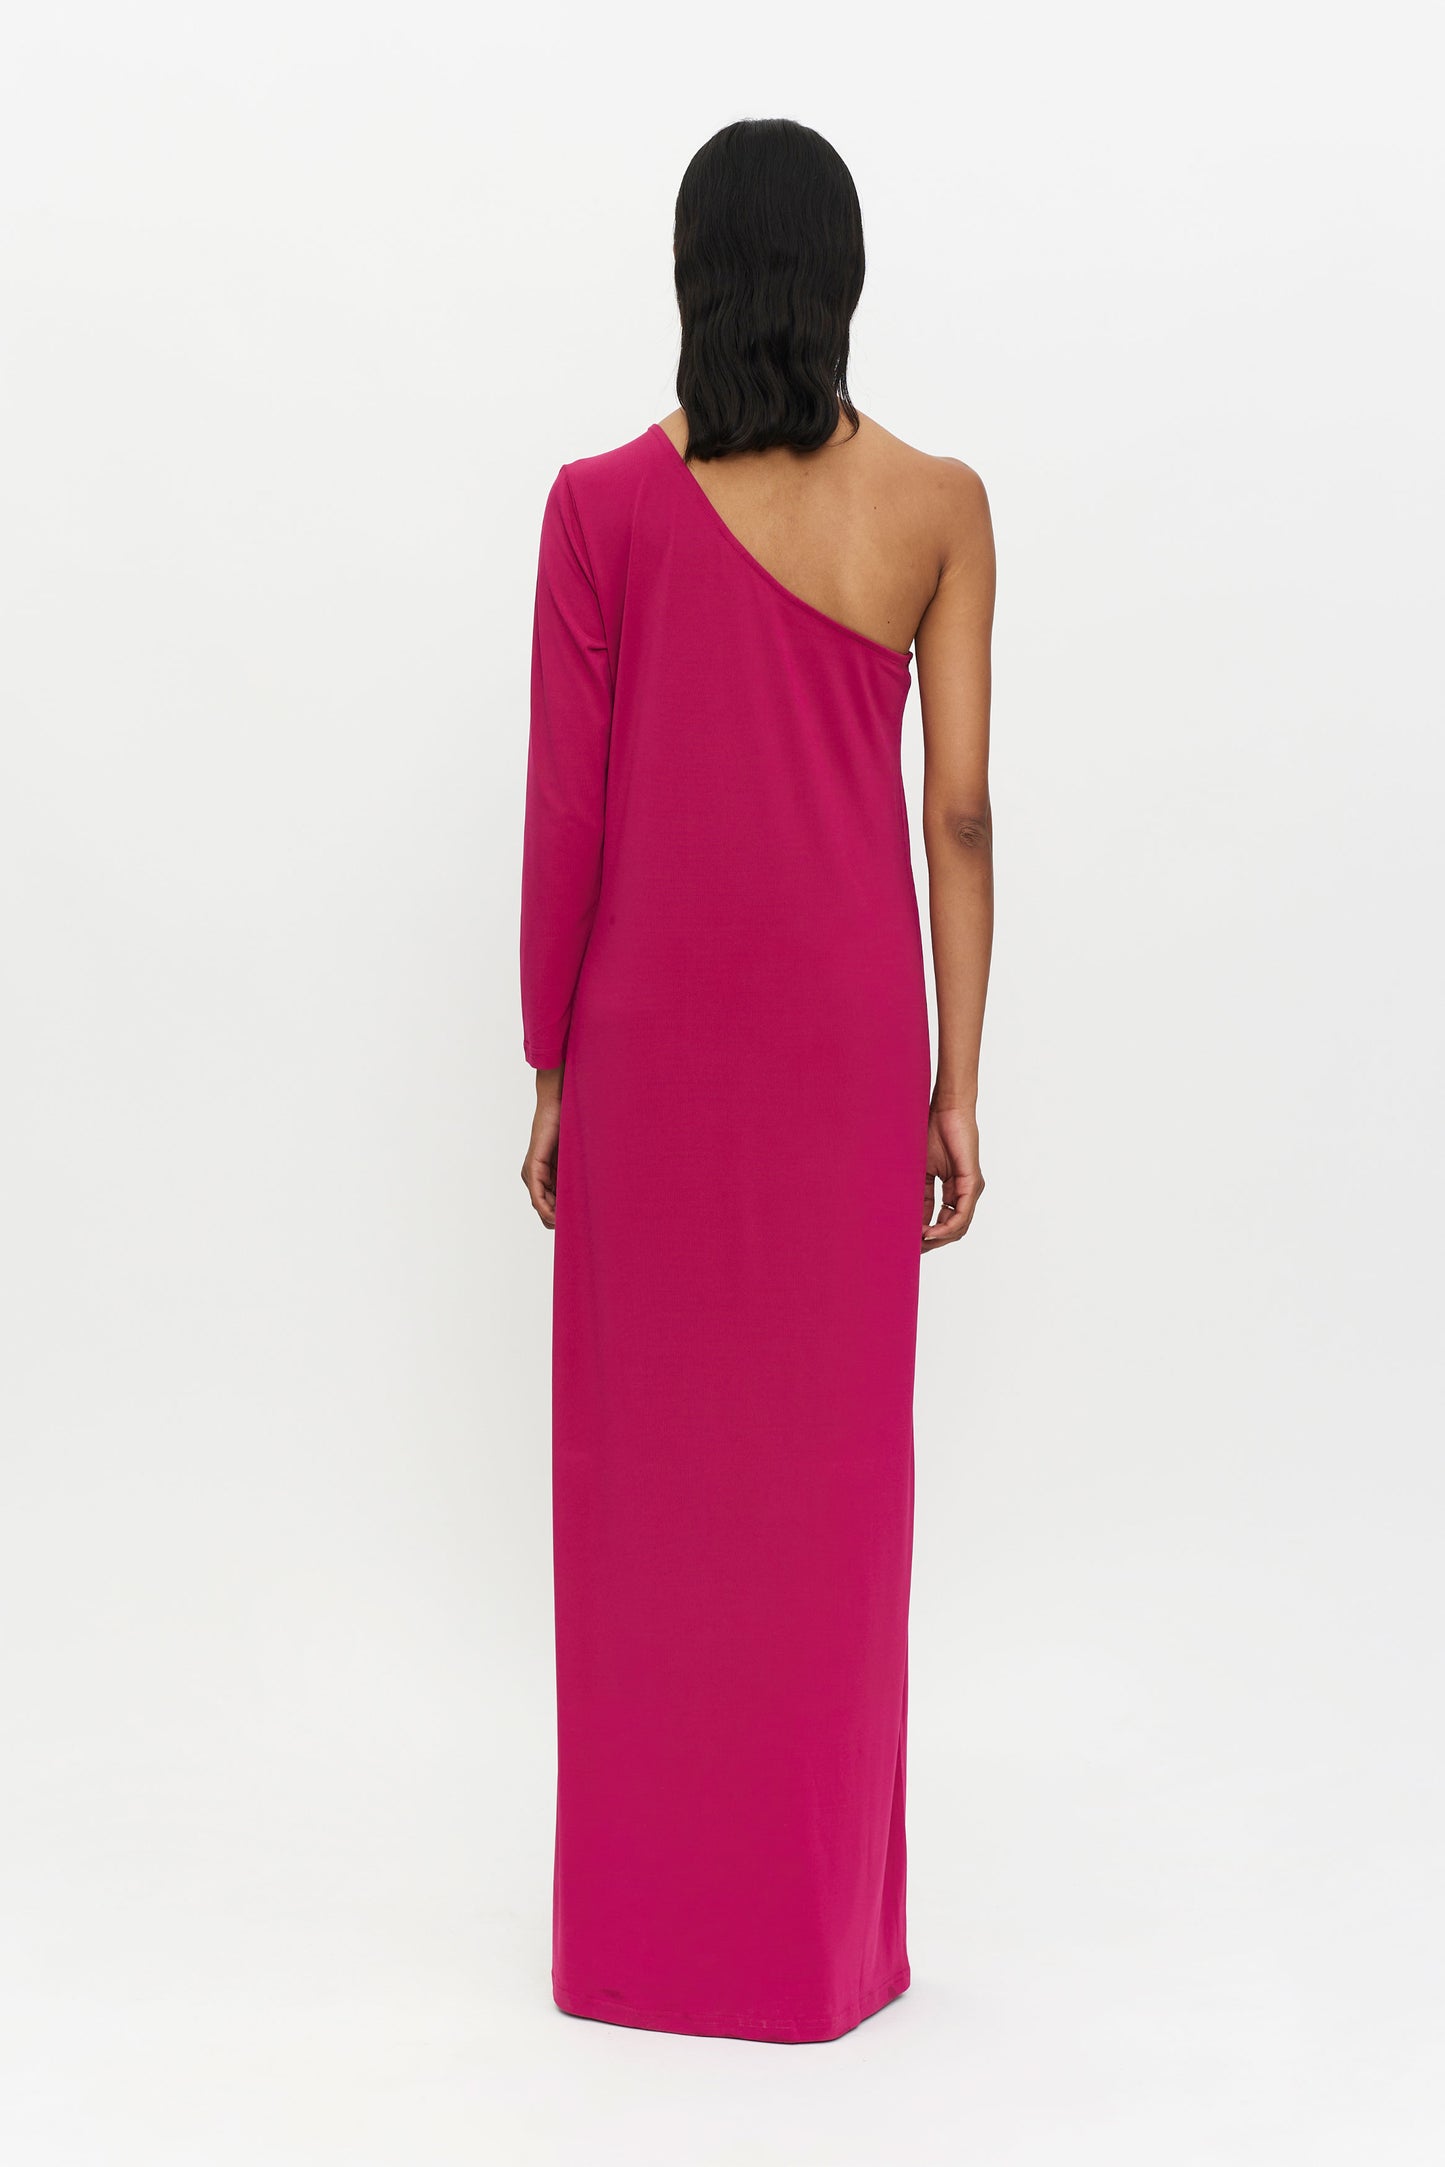 Long pink asymmetrical dress